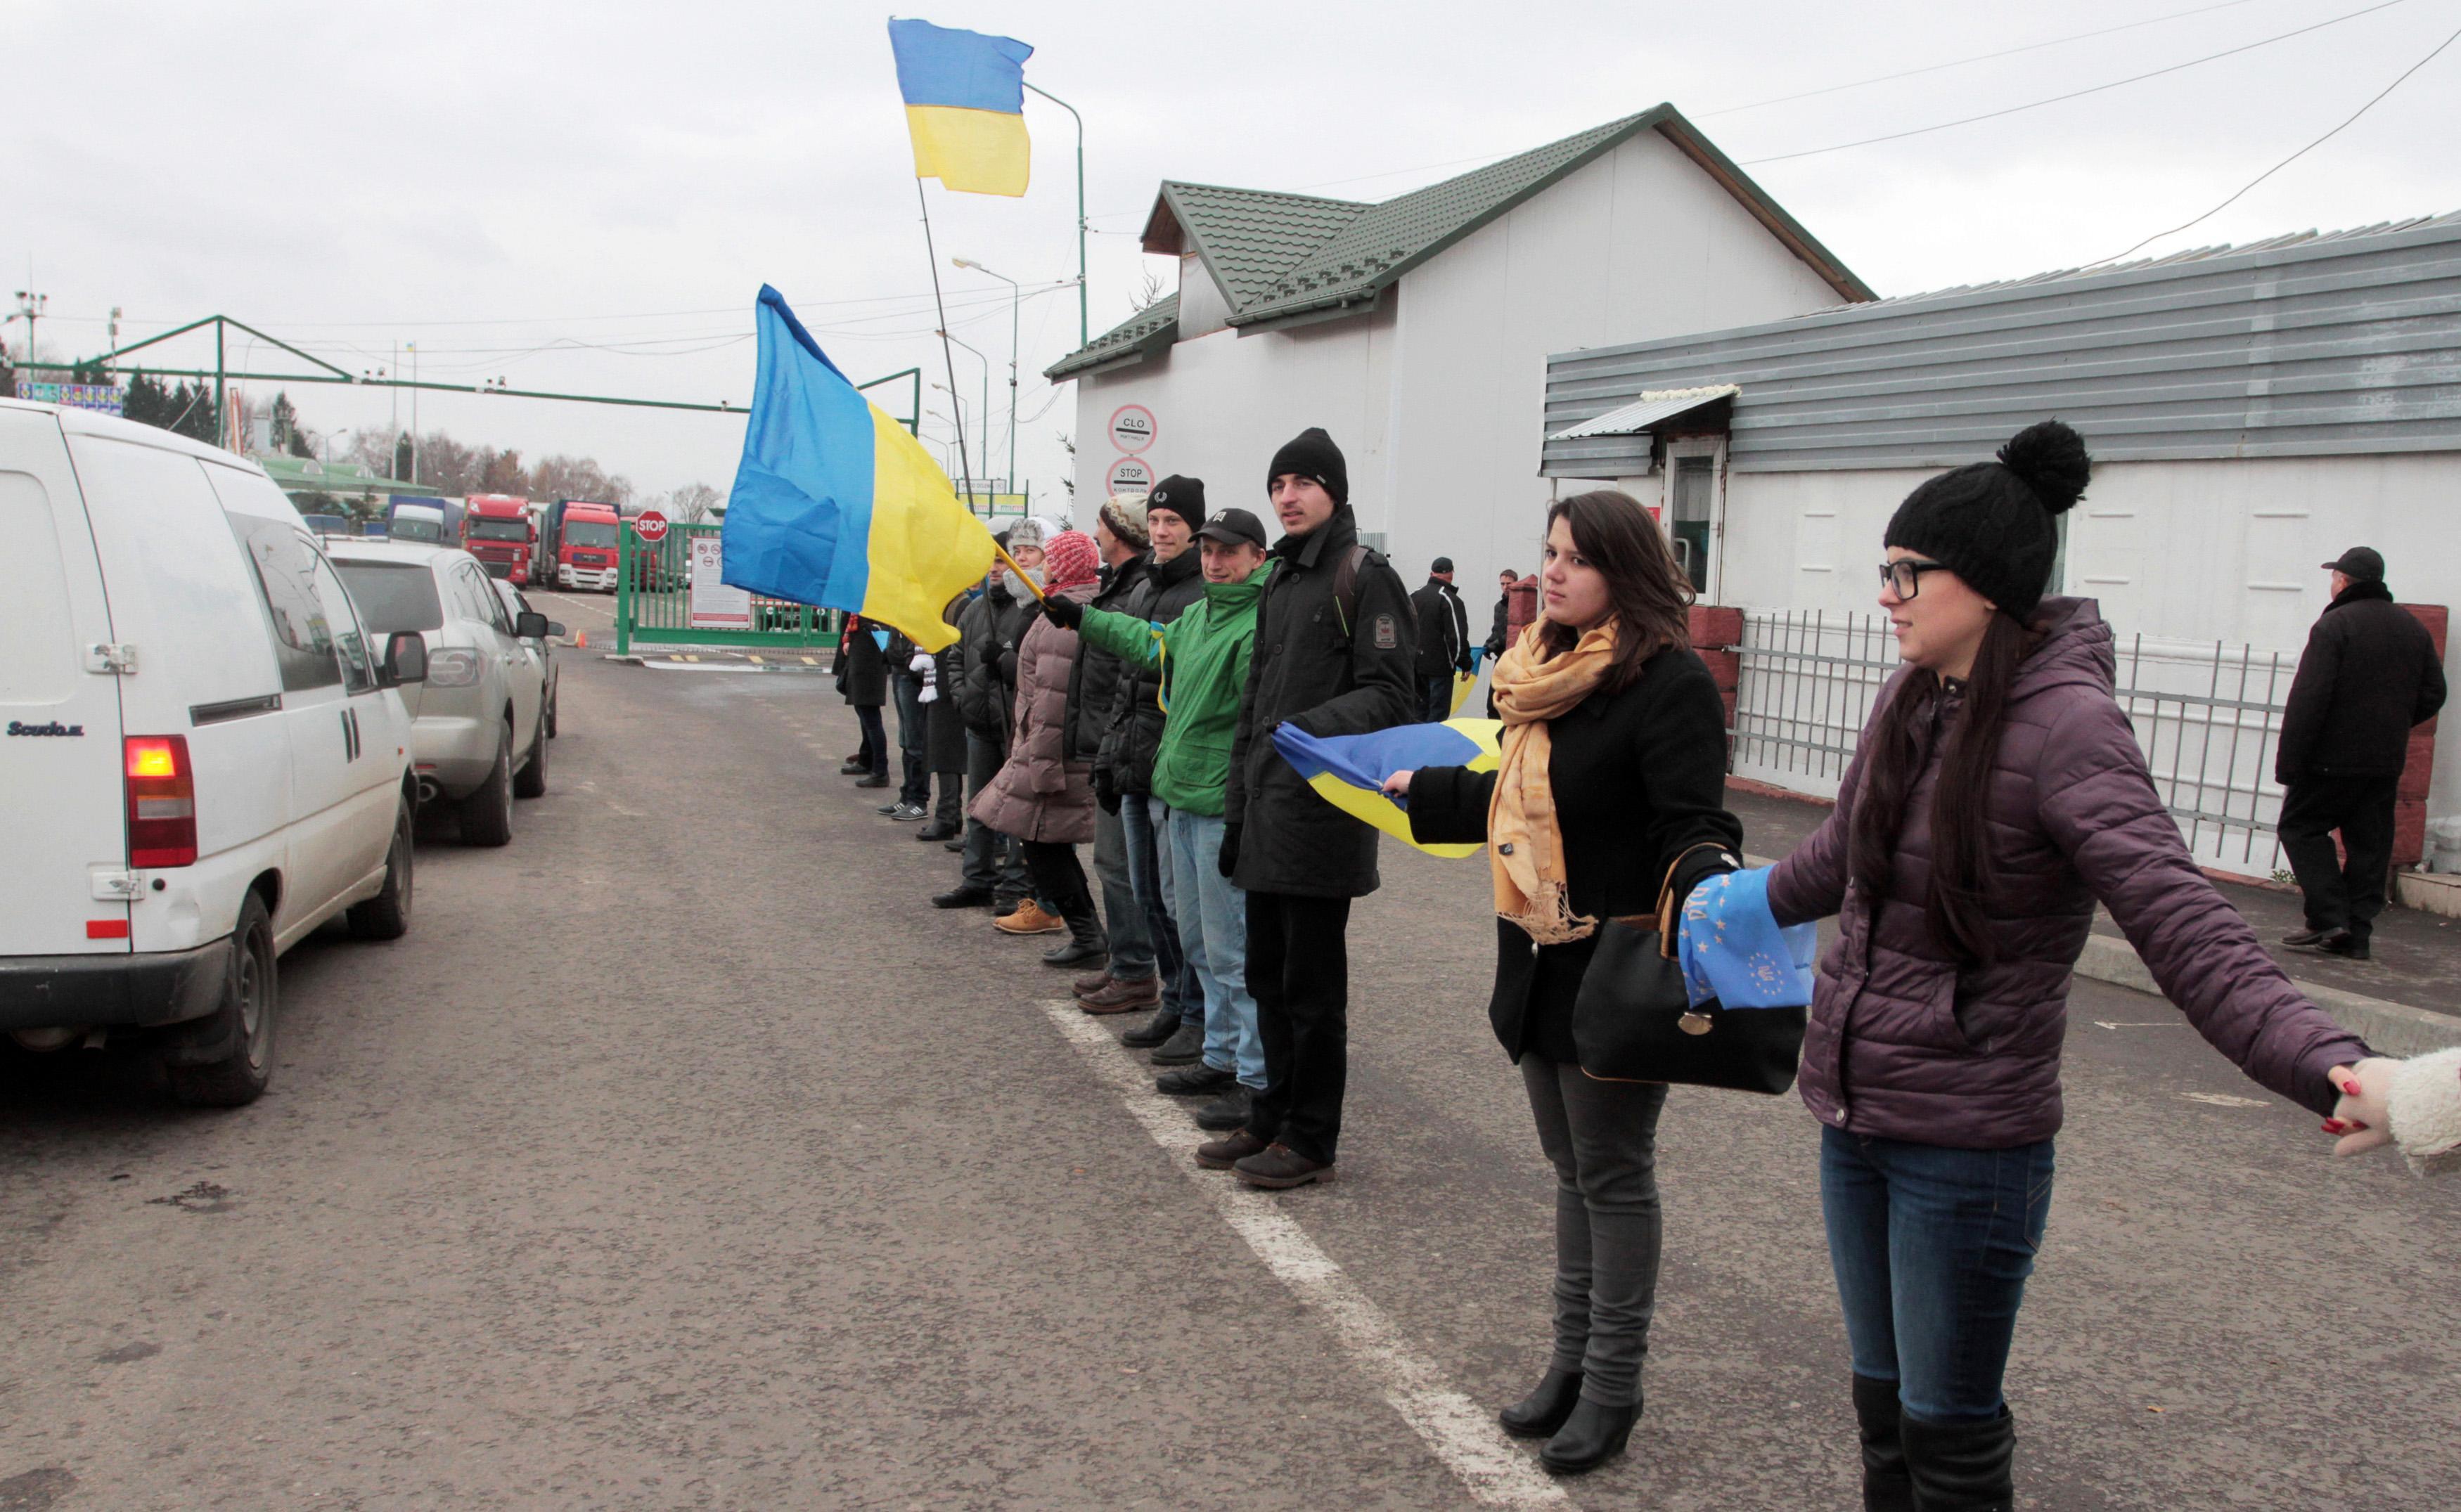 Ουκρανία: Χιλιάδες διαδηλωτές σχημάτισαν μια ανθρώπινη αλυσίδα προς την Ευρώπη